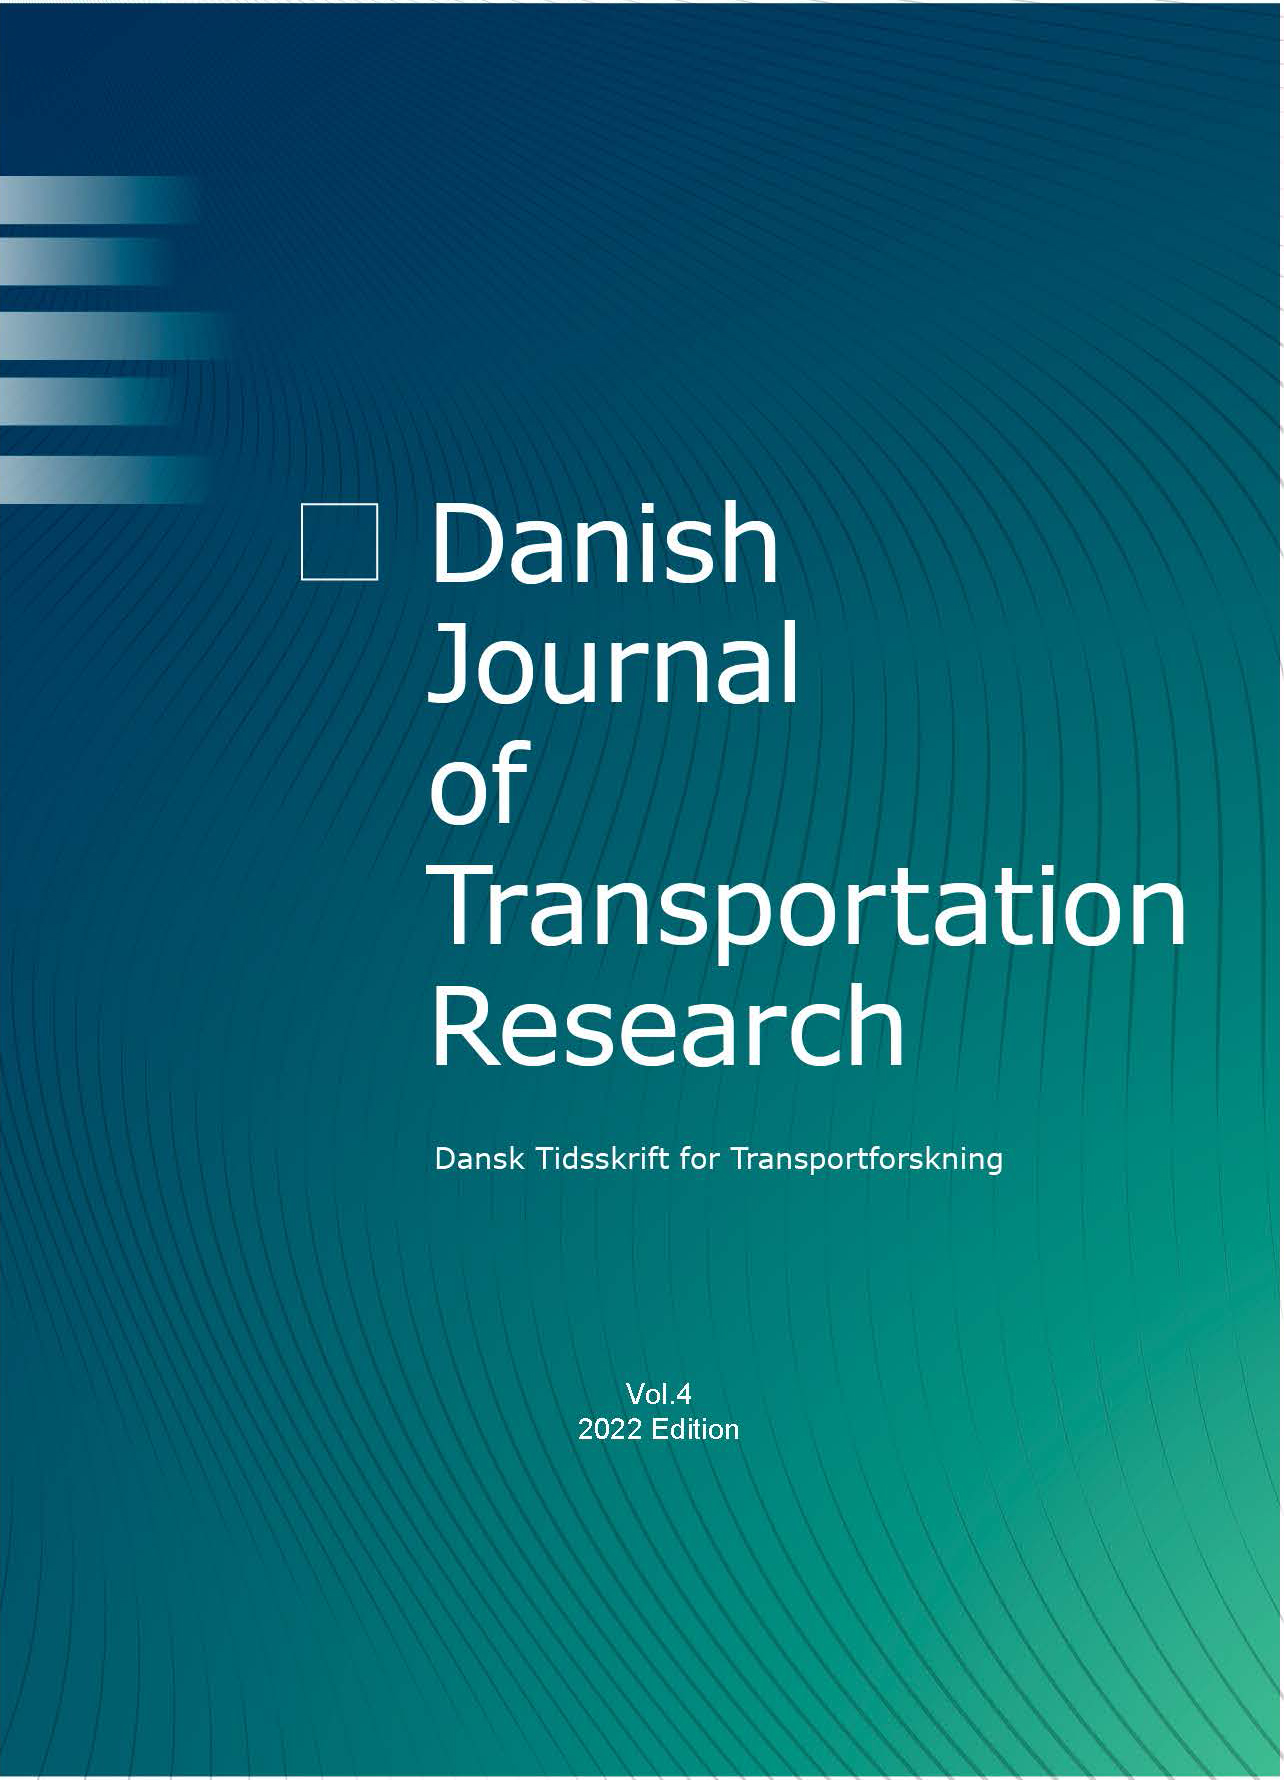 					Se Årg. 4 (2022): Danish Journal of Transportation Research - Dansk tidsskrift for transportforskning
				